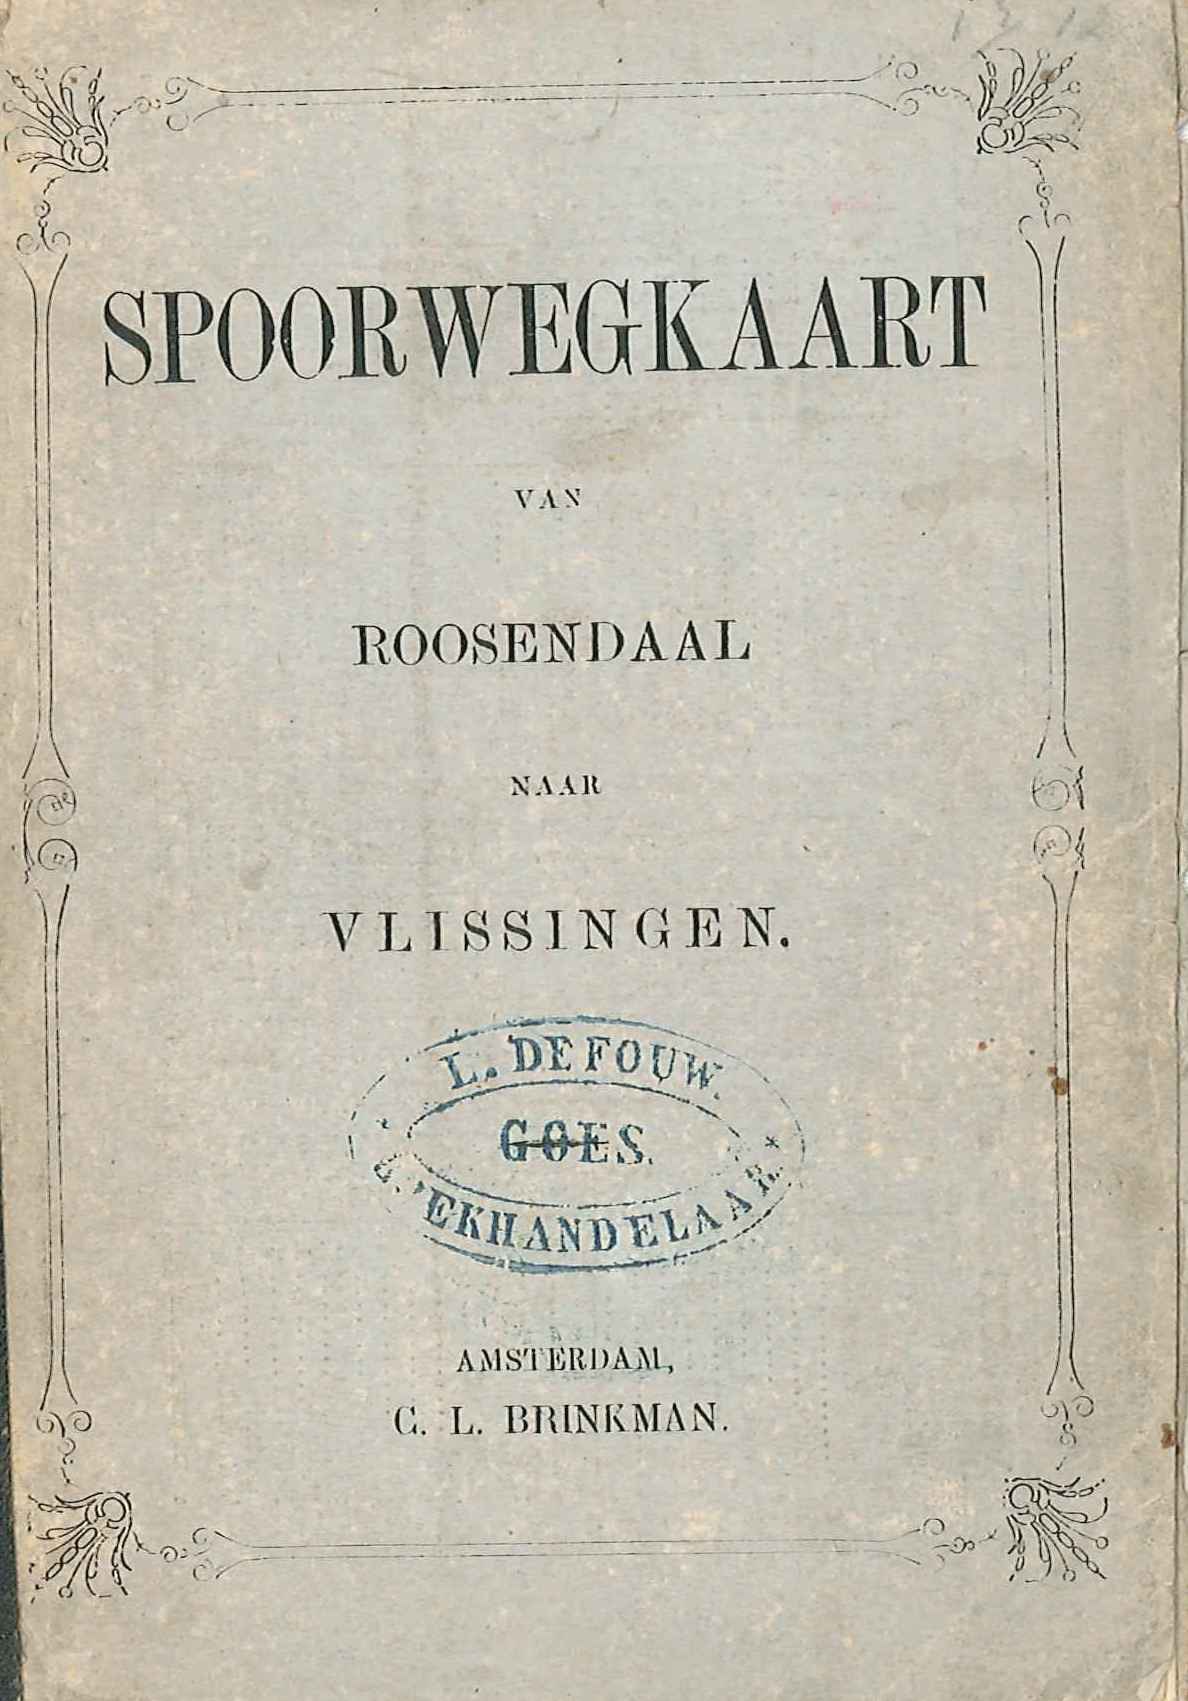 Omslag van de spoorwegkaart van Roosendaal naar Vlissingen, ca. 1865. GAG.HB.